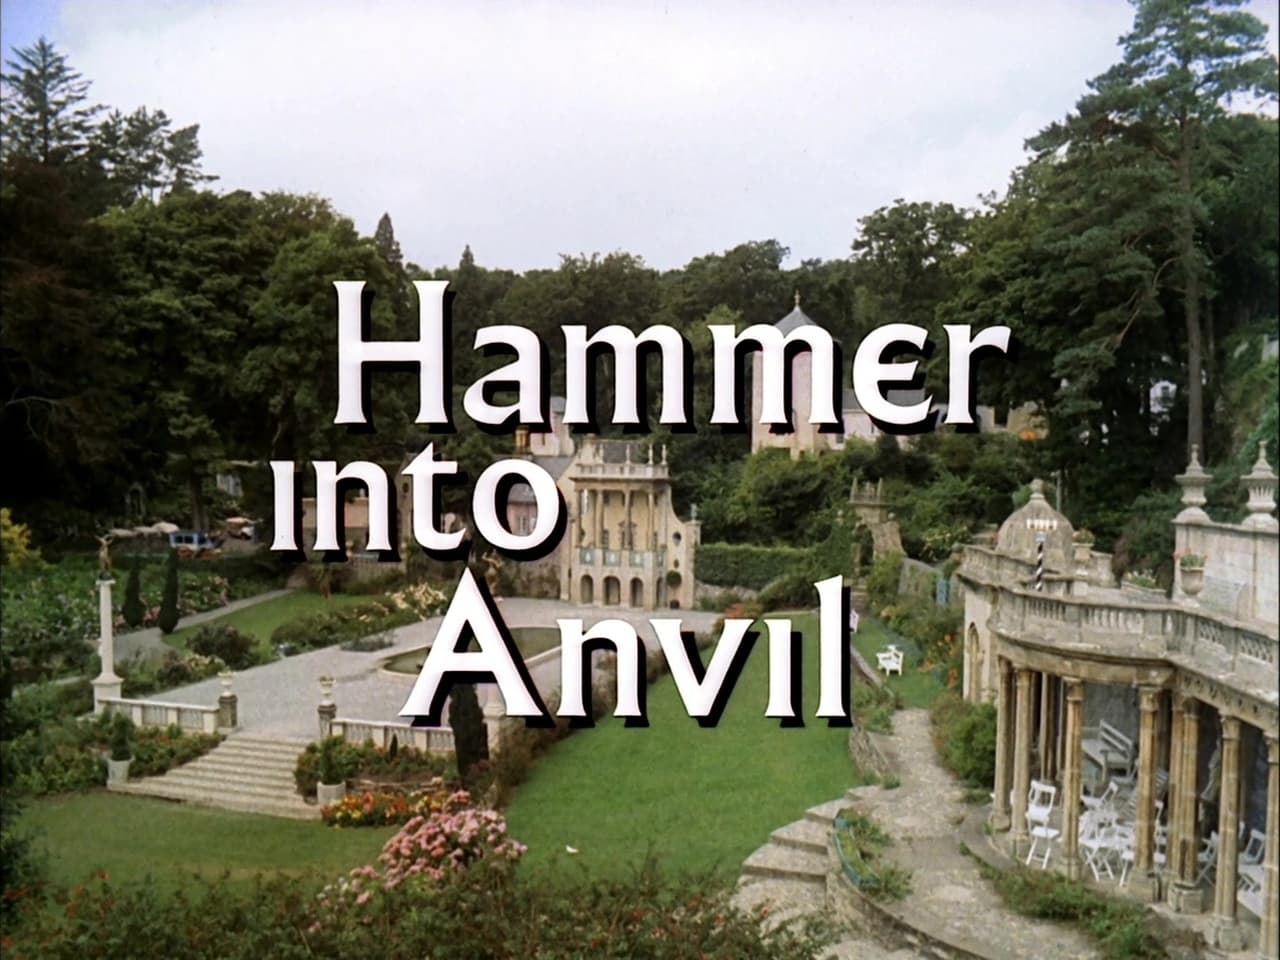 Hammer into Anvil